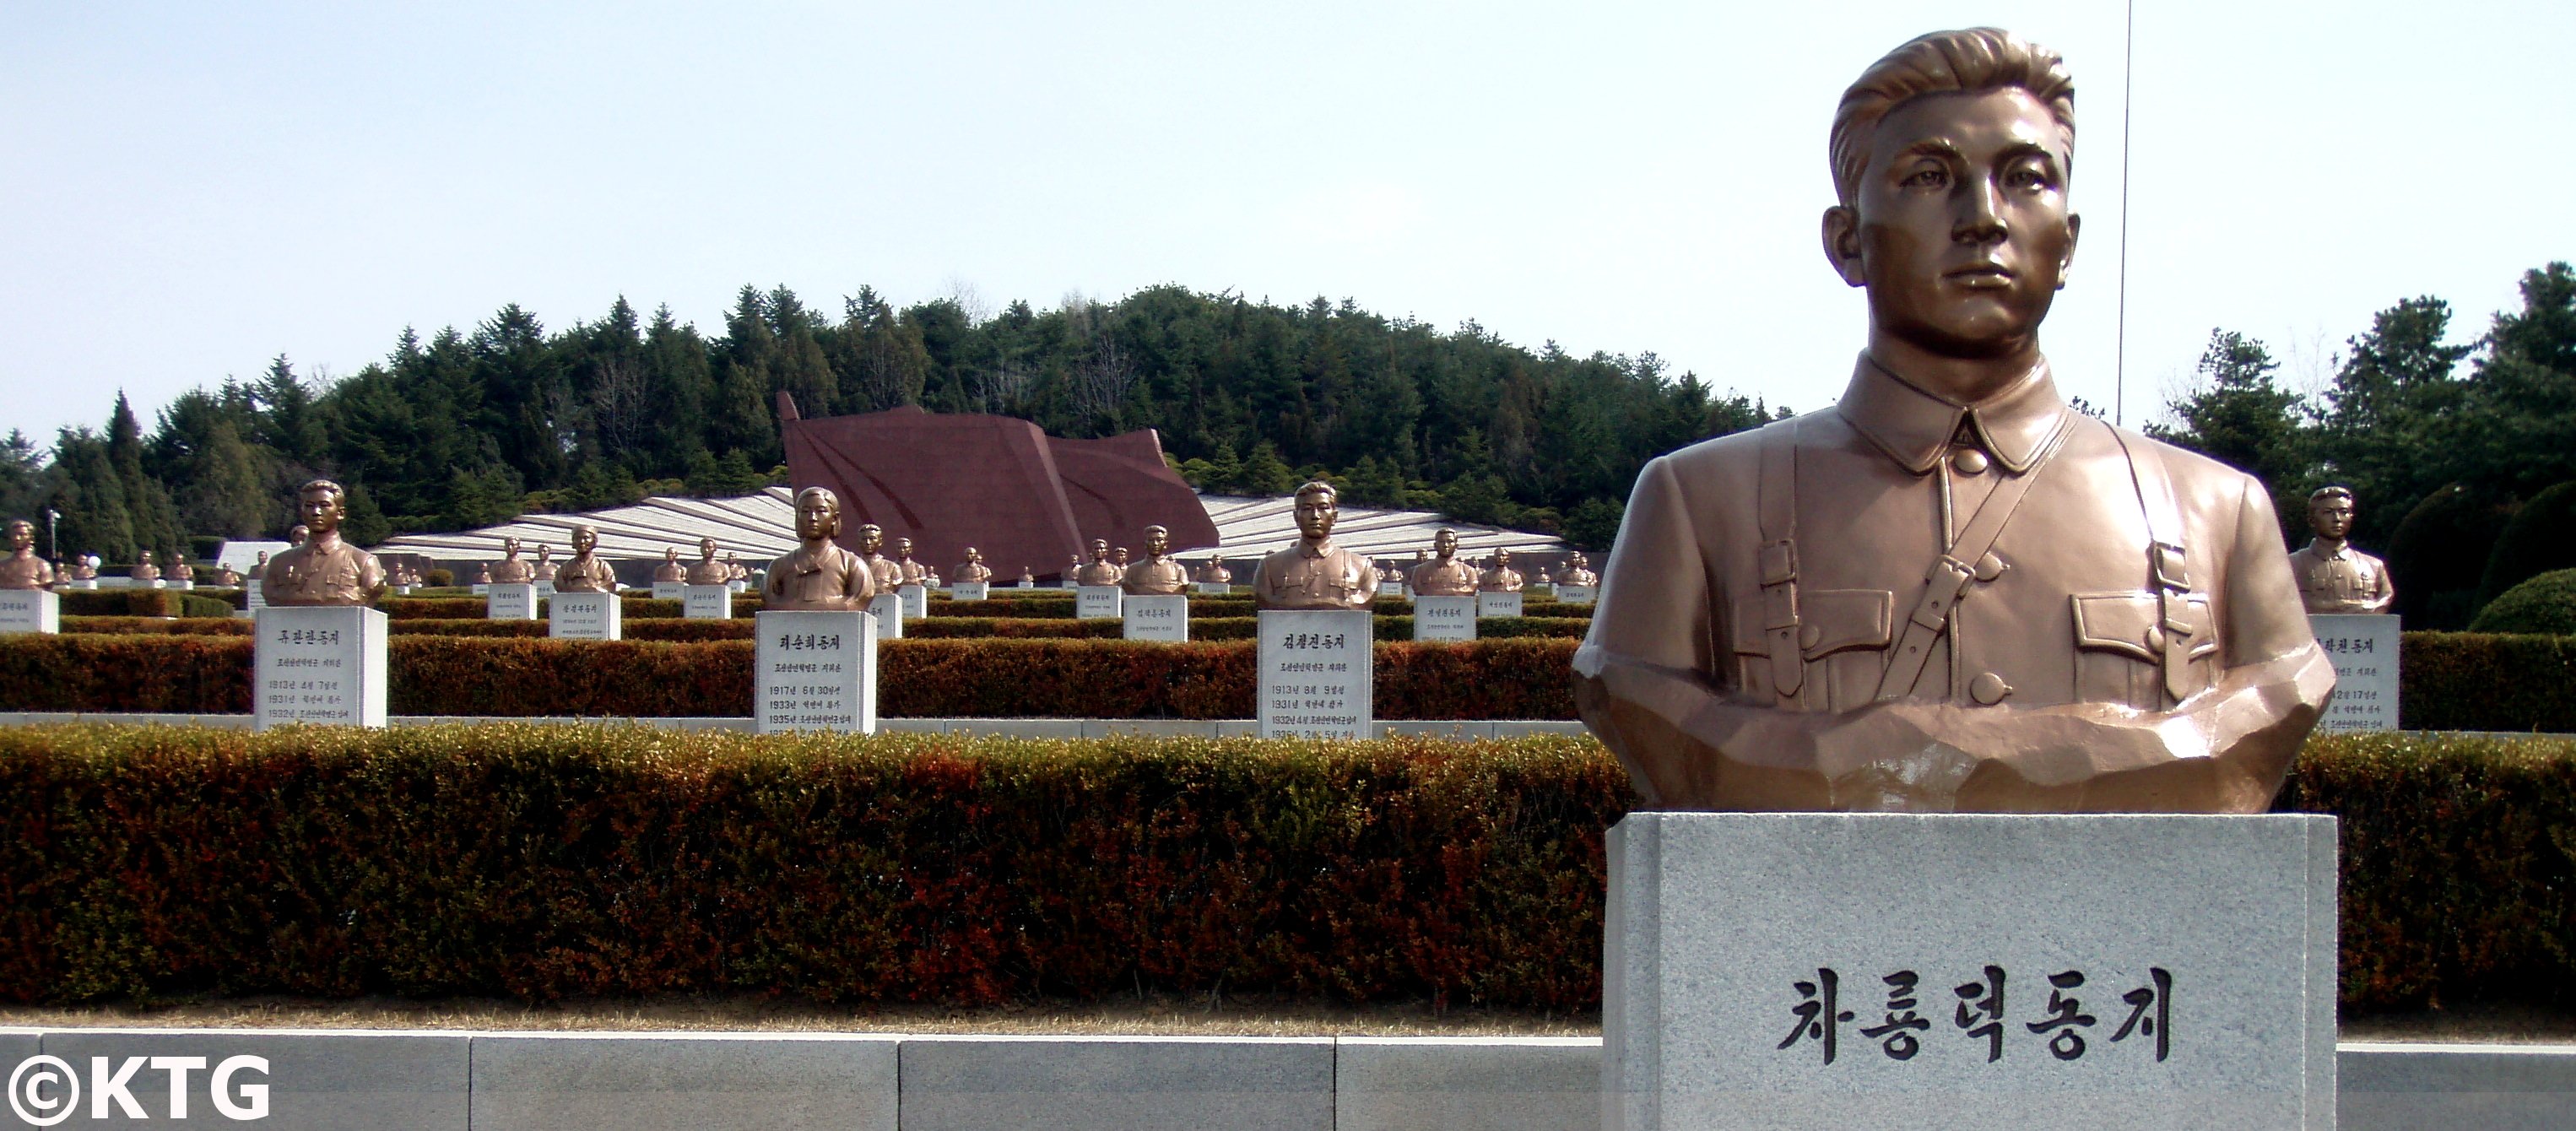 Le cimetière des martyrs révolutionnaires de Pyongyang, capitale de la Corée du Nord, a des bustes de héros nationaux qui ont consacré leur vie à lutter contre les Japonais. Photo prise par KTG Tours